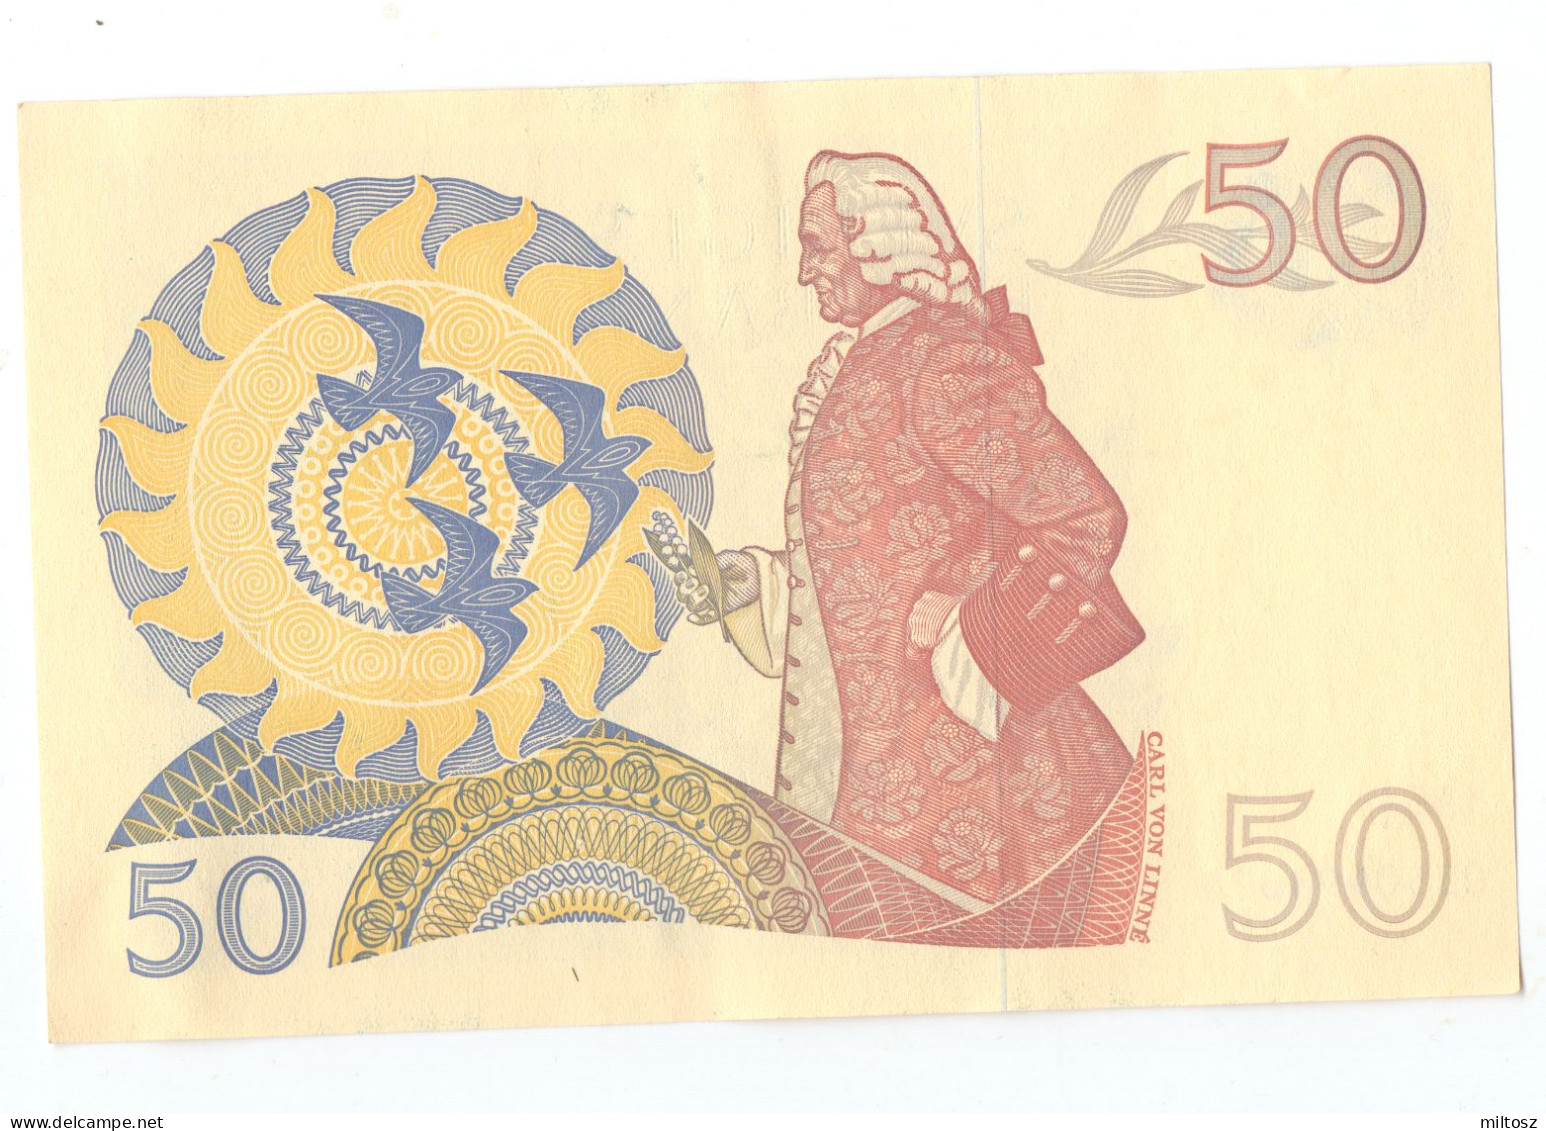 Sweden 50 Kronor 1990 - Sweden